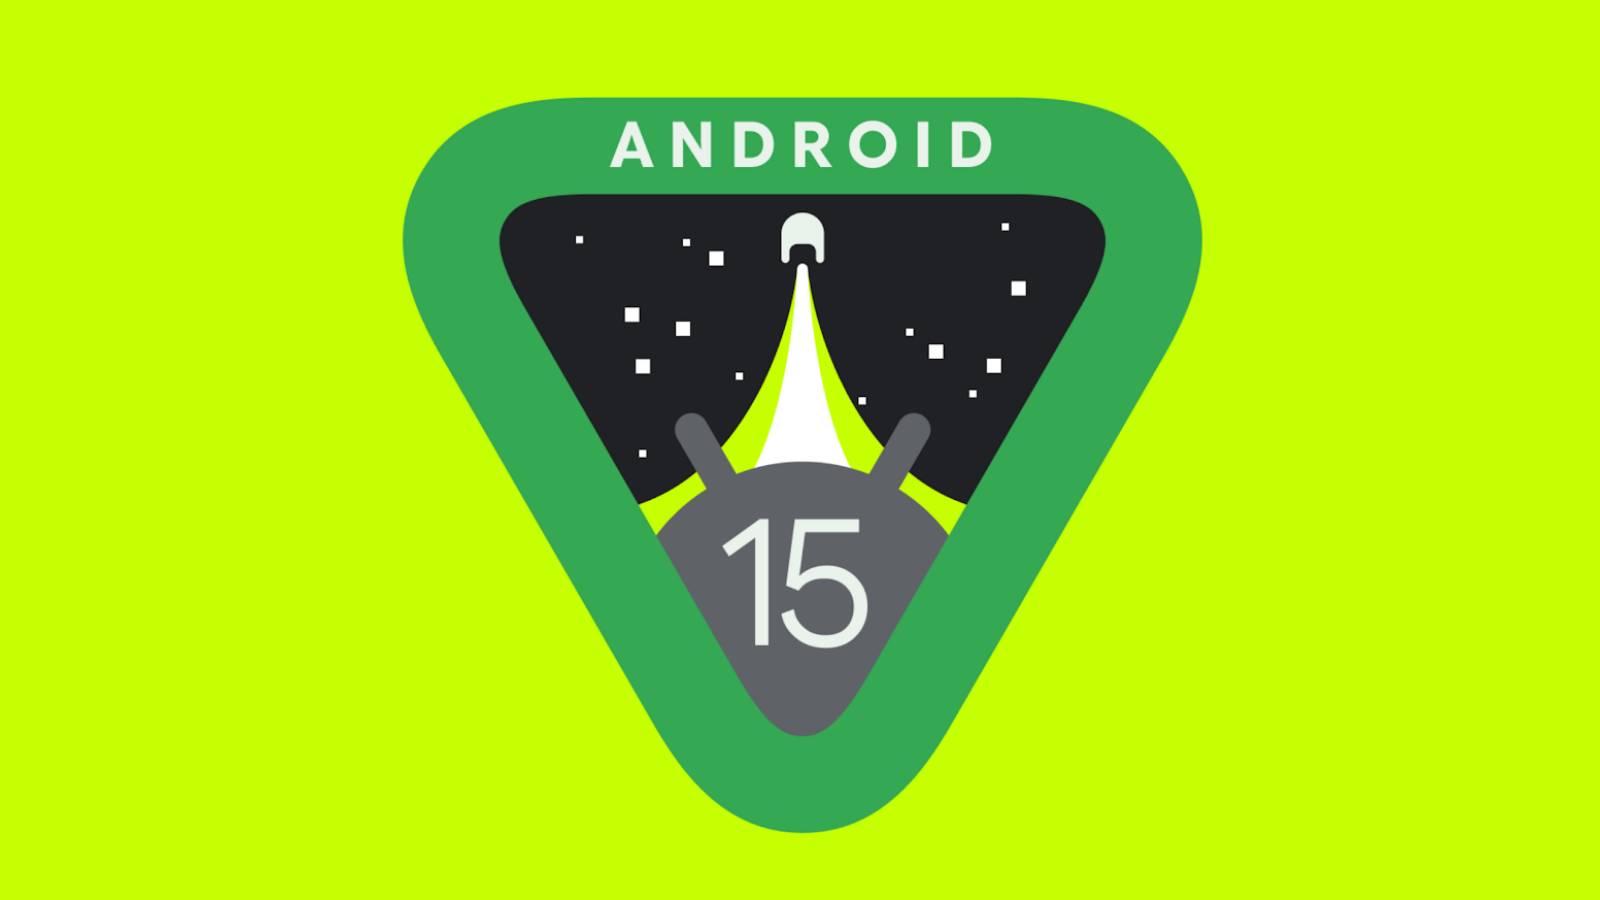 Google afslutter Android 15 ÆNDRINGER, der forventes af mange mennesker